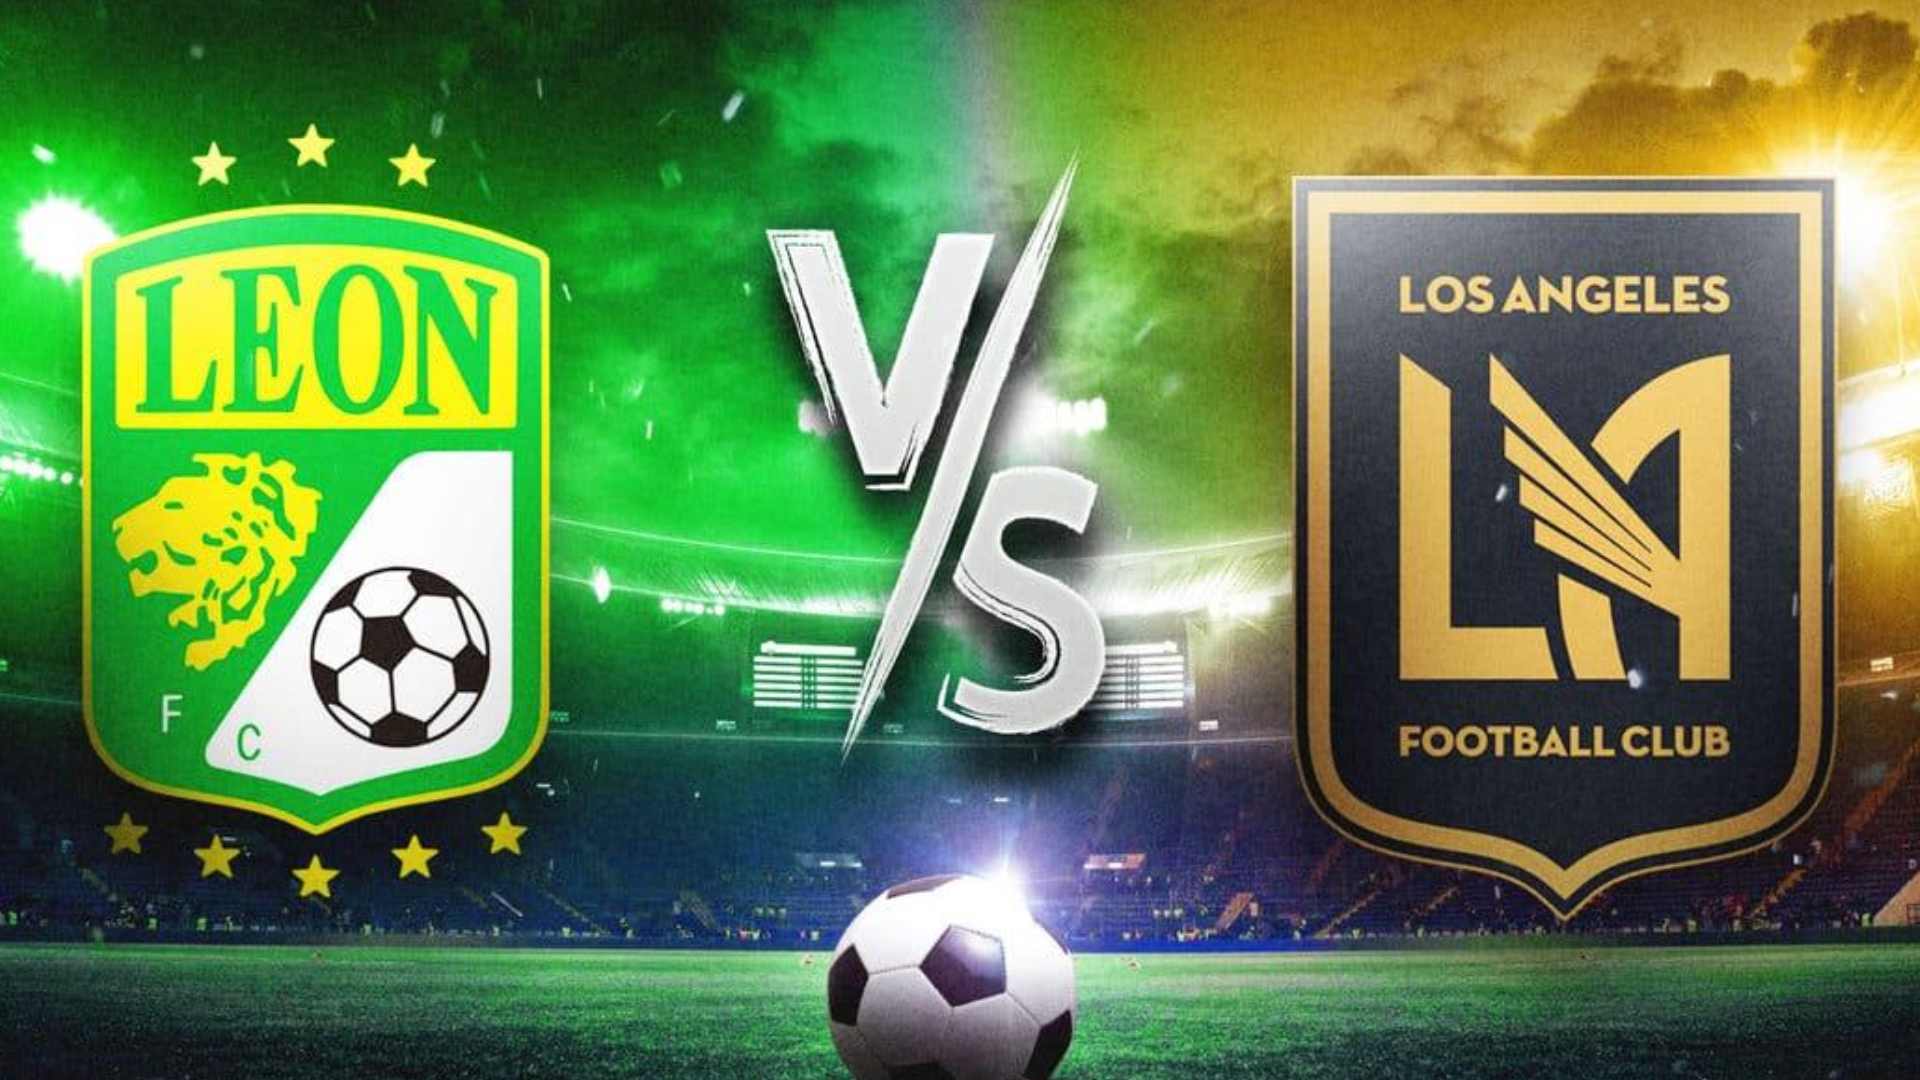 León Los Ángeles FC